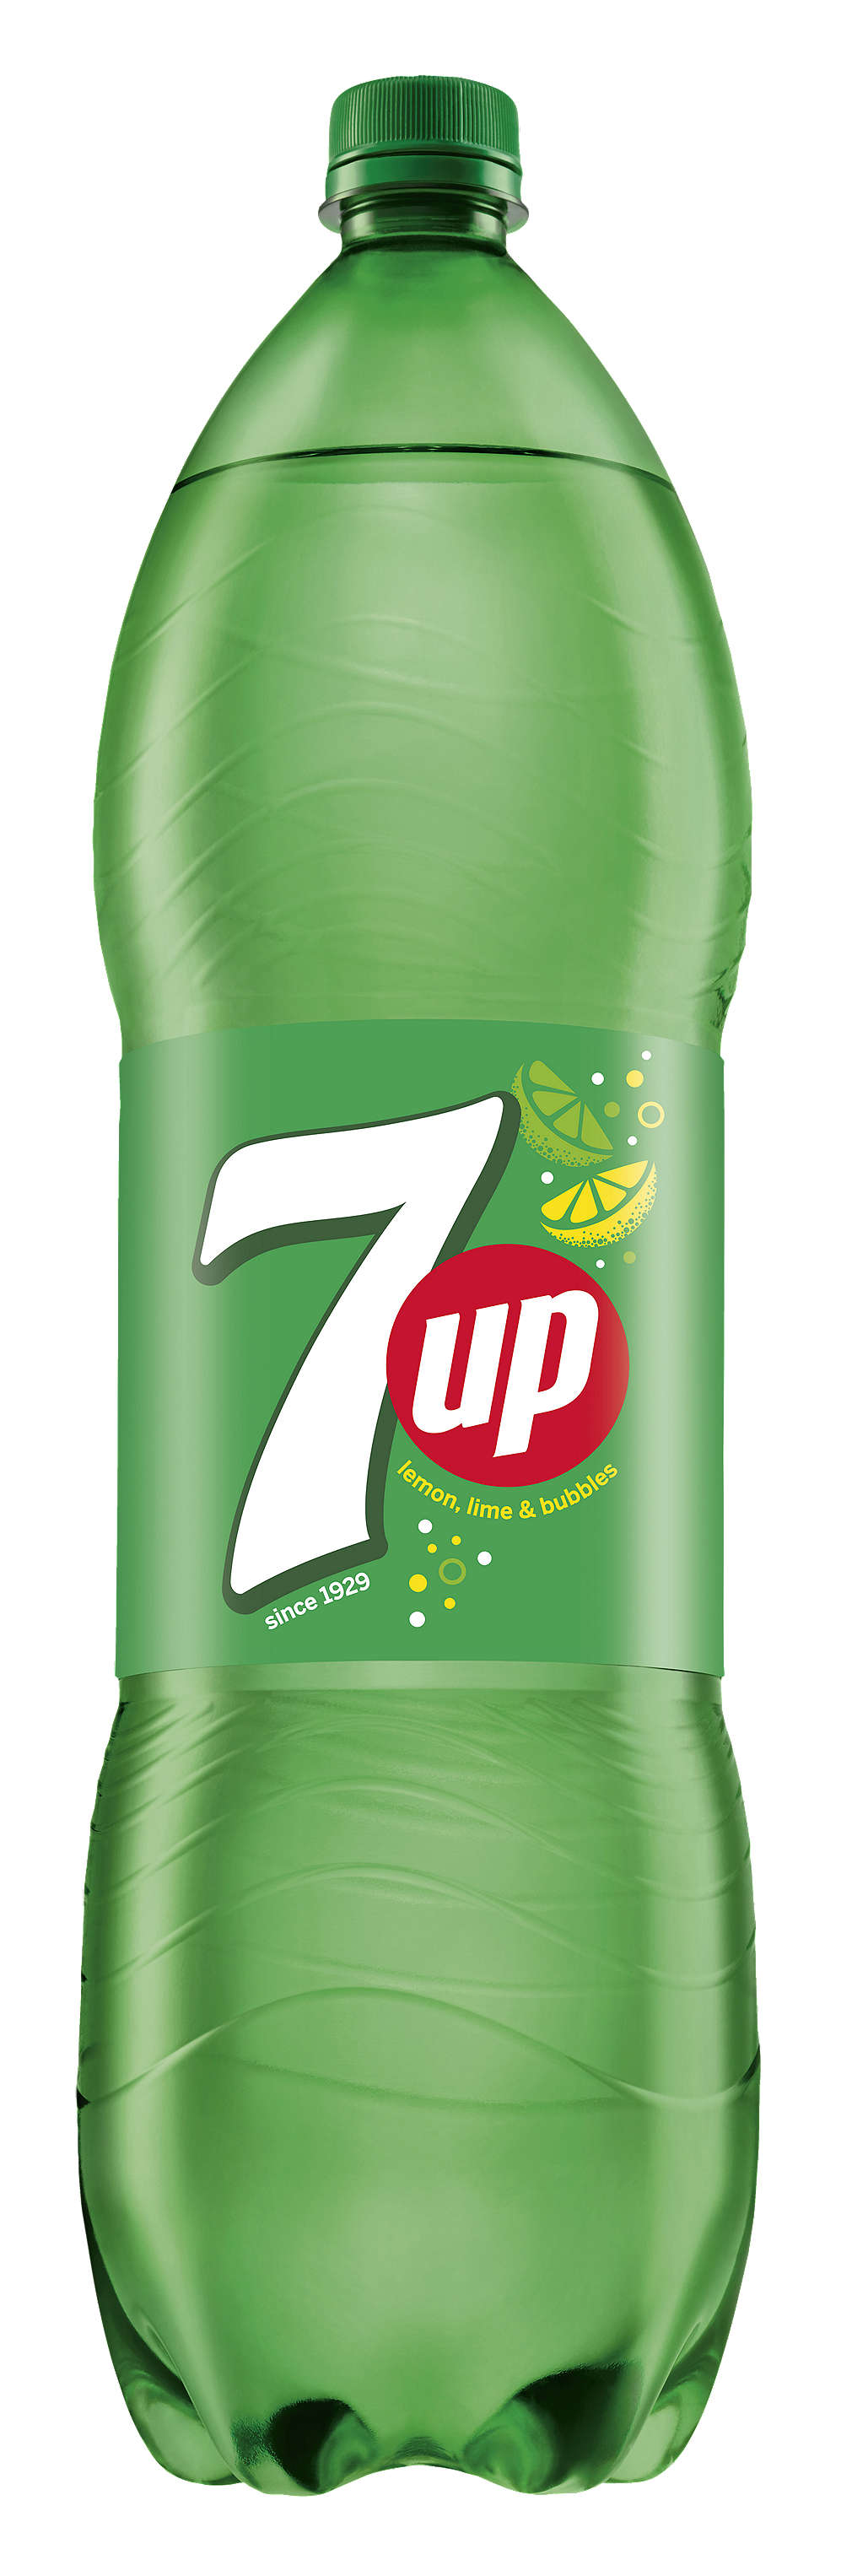 Изображение за продукта Pepsi, Mirinda или 7 Up Газирана напитка